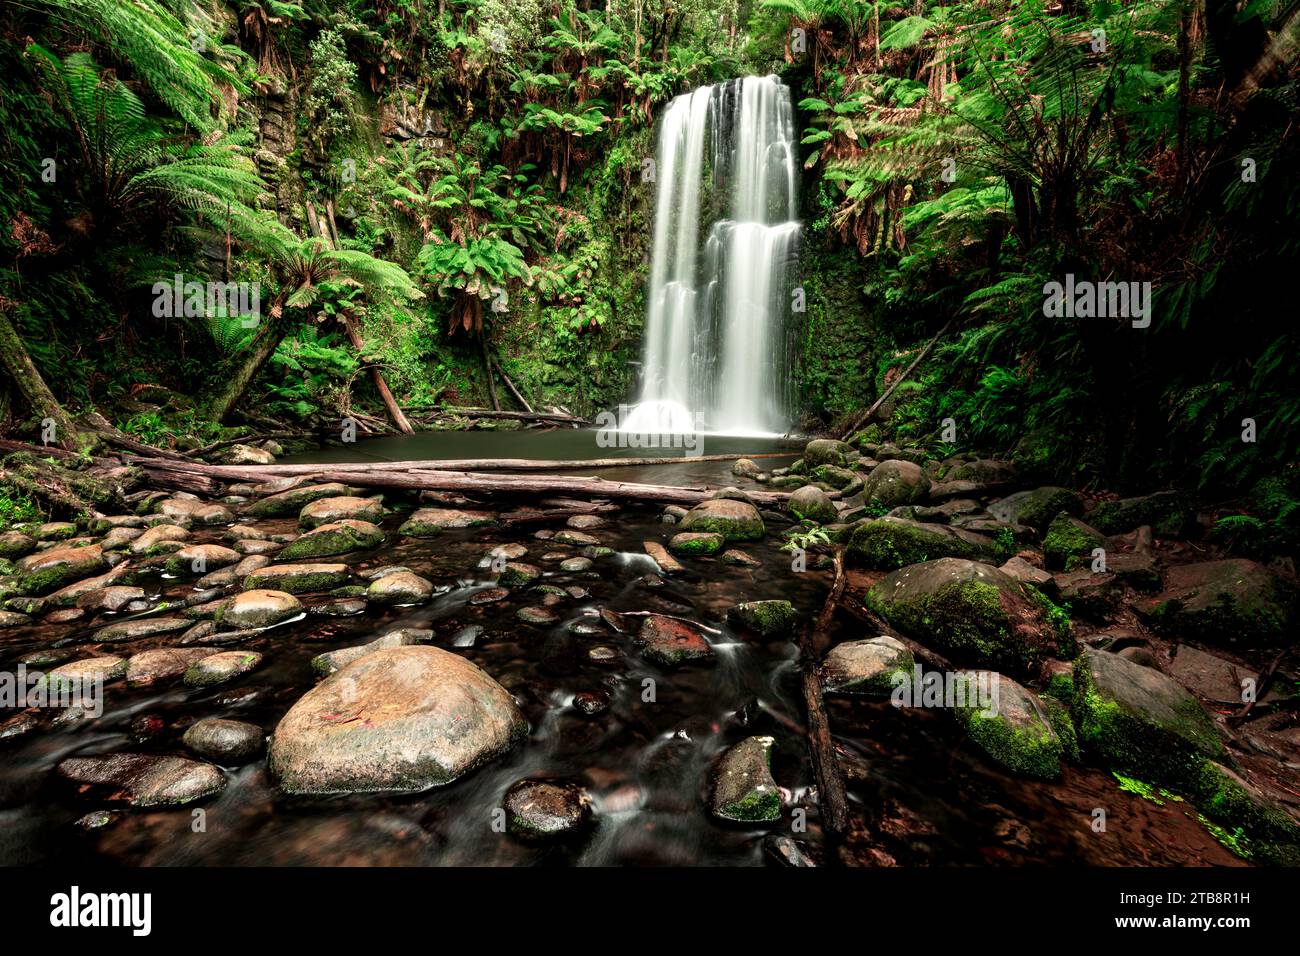 Las cataratas Beauchamp están bien escondidas en la selva tropical del Parque Nacional Great Otway. Foto de stock